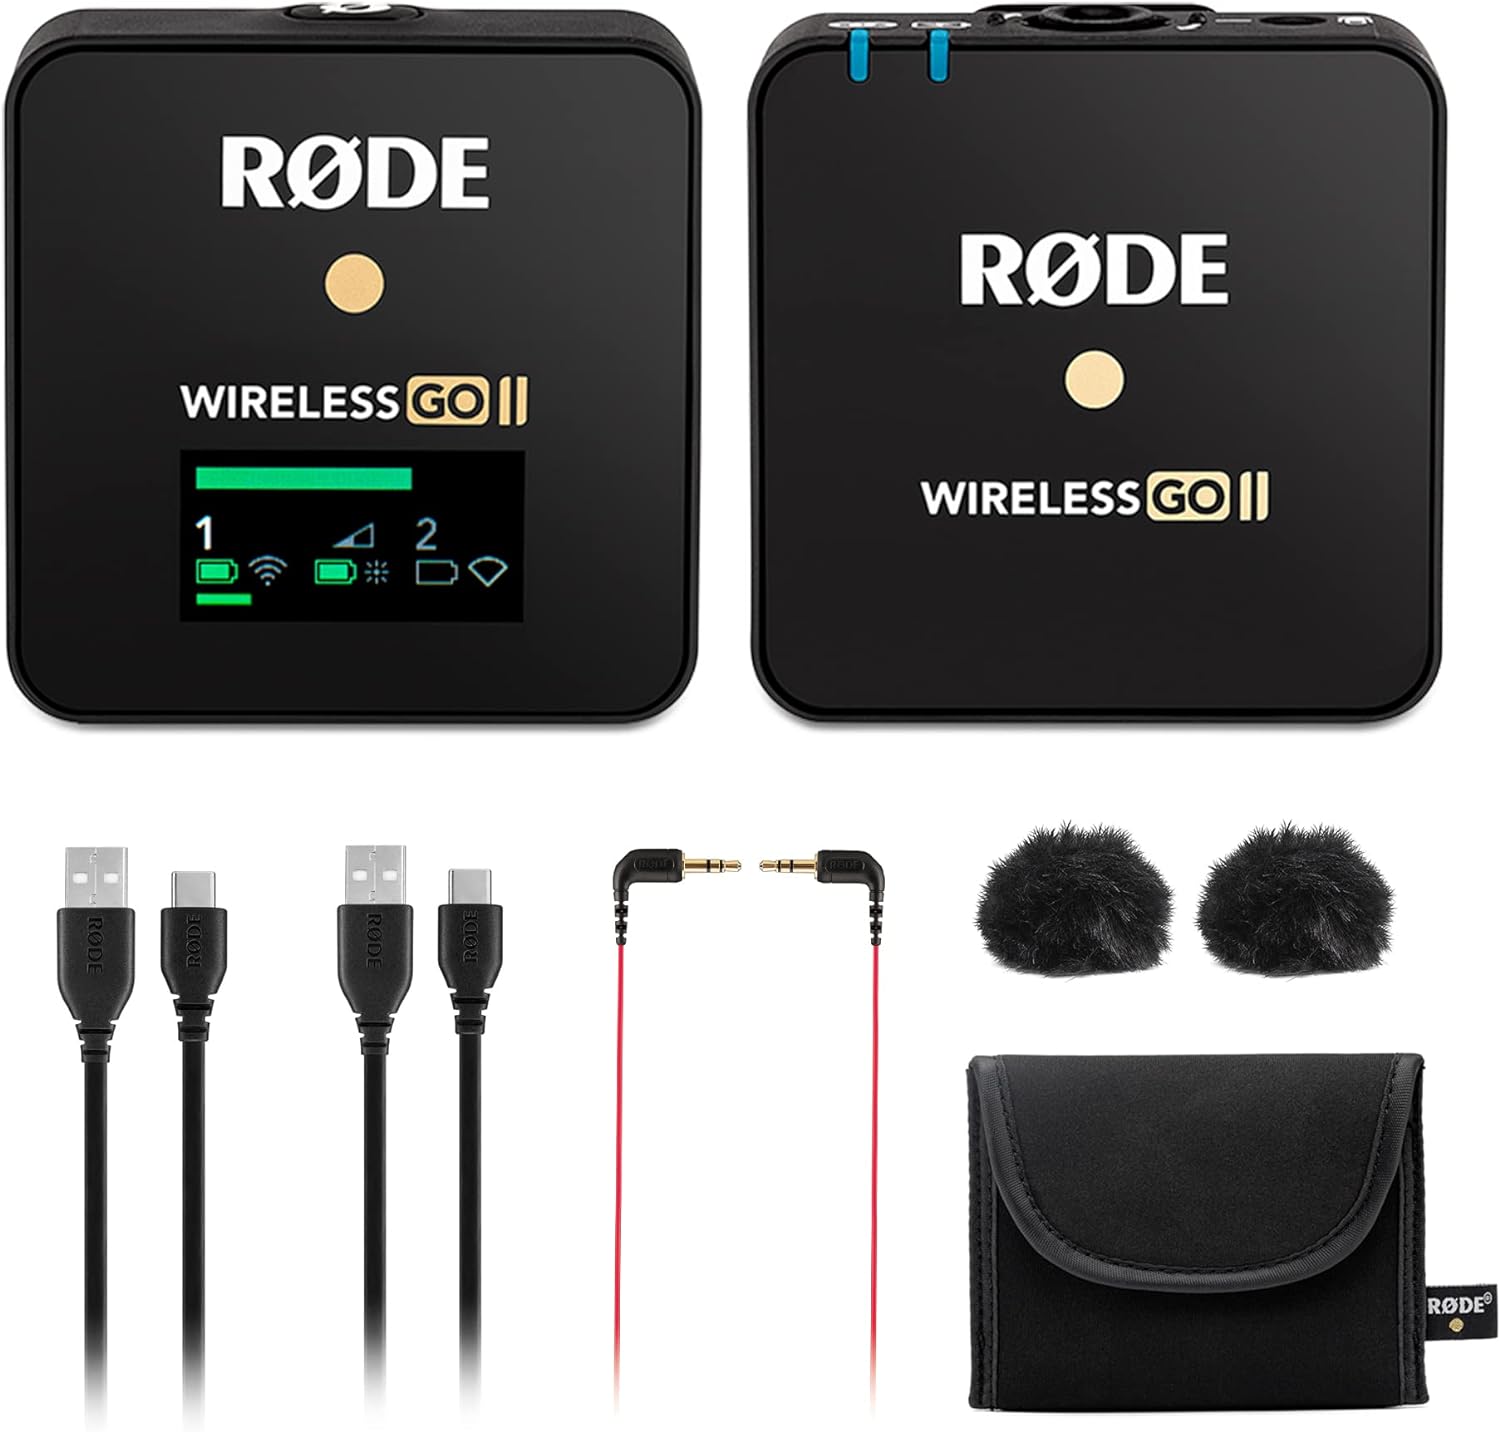 Rode Wireless GO II Single Channel Wireless Microphone System, Black - $120